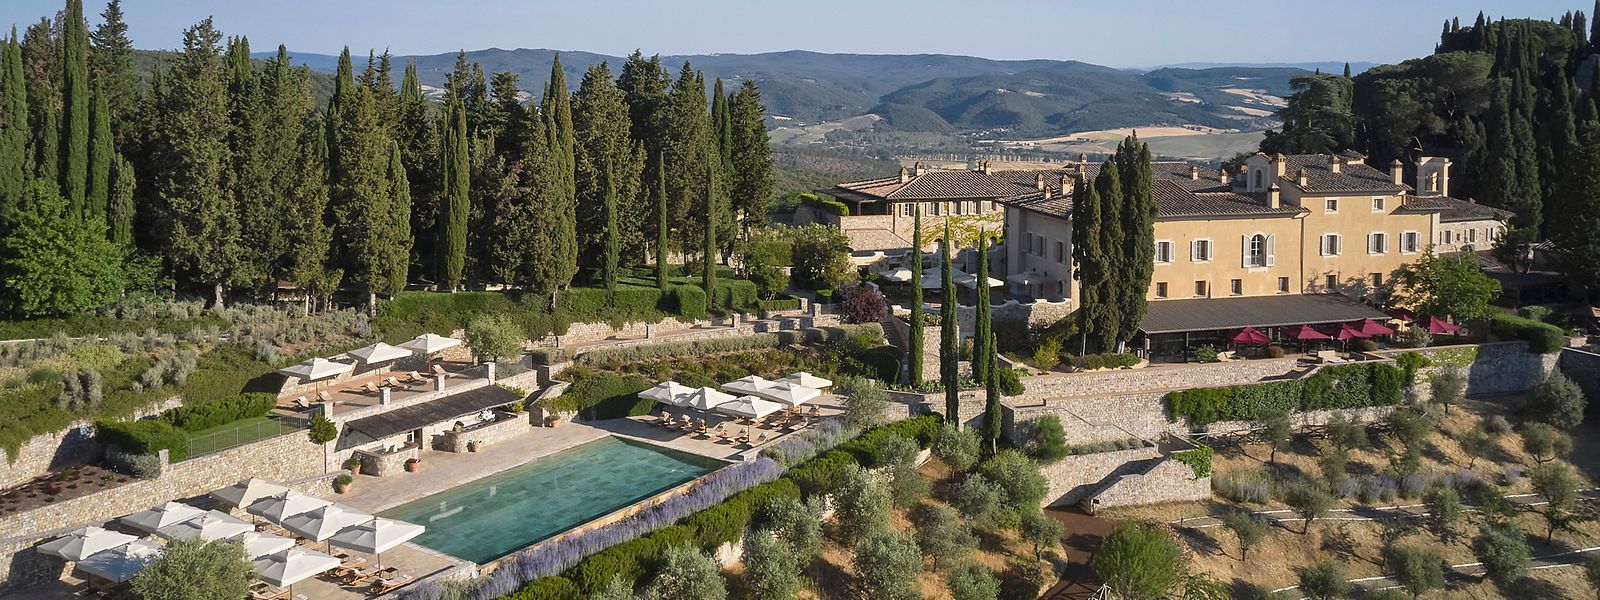 Das beste Hotel der Welt liegt in der Toskana: das Rosewood Castiglion del Bosco mit hauseigenem Weingut und privatem Golfclub. 